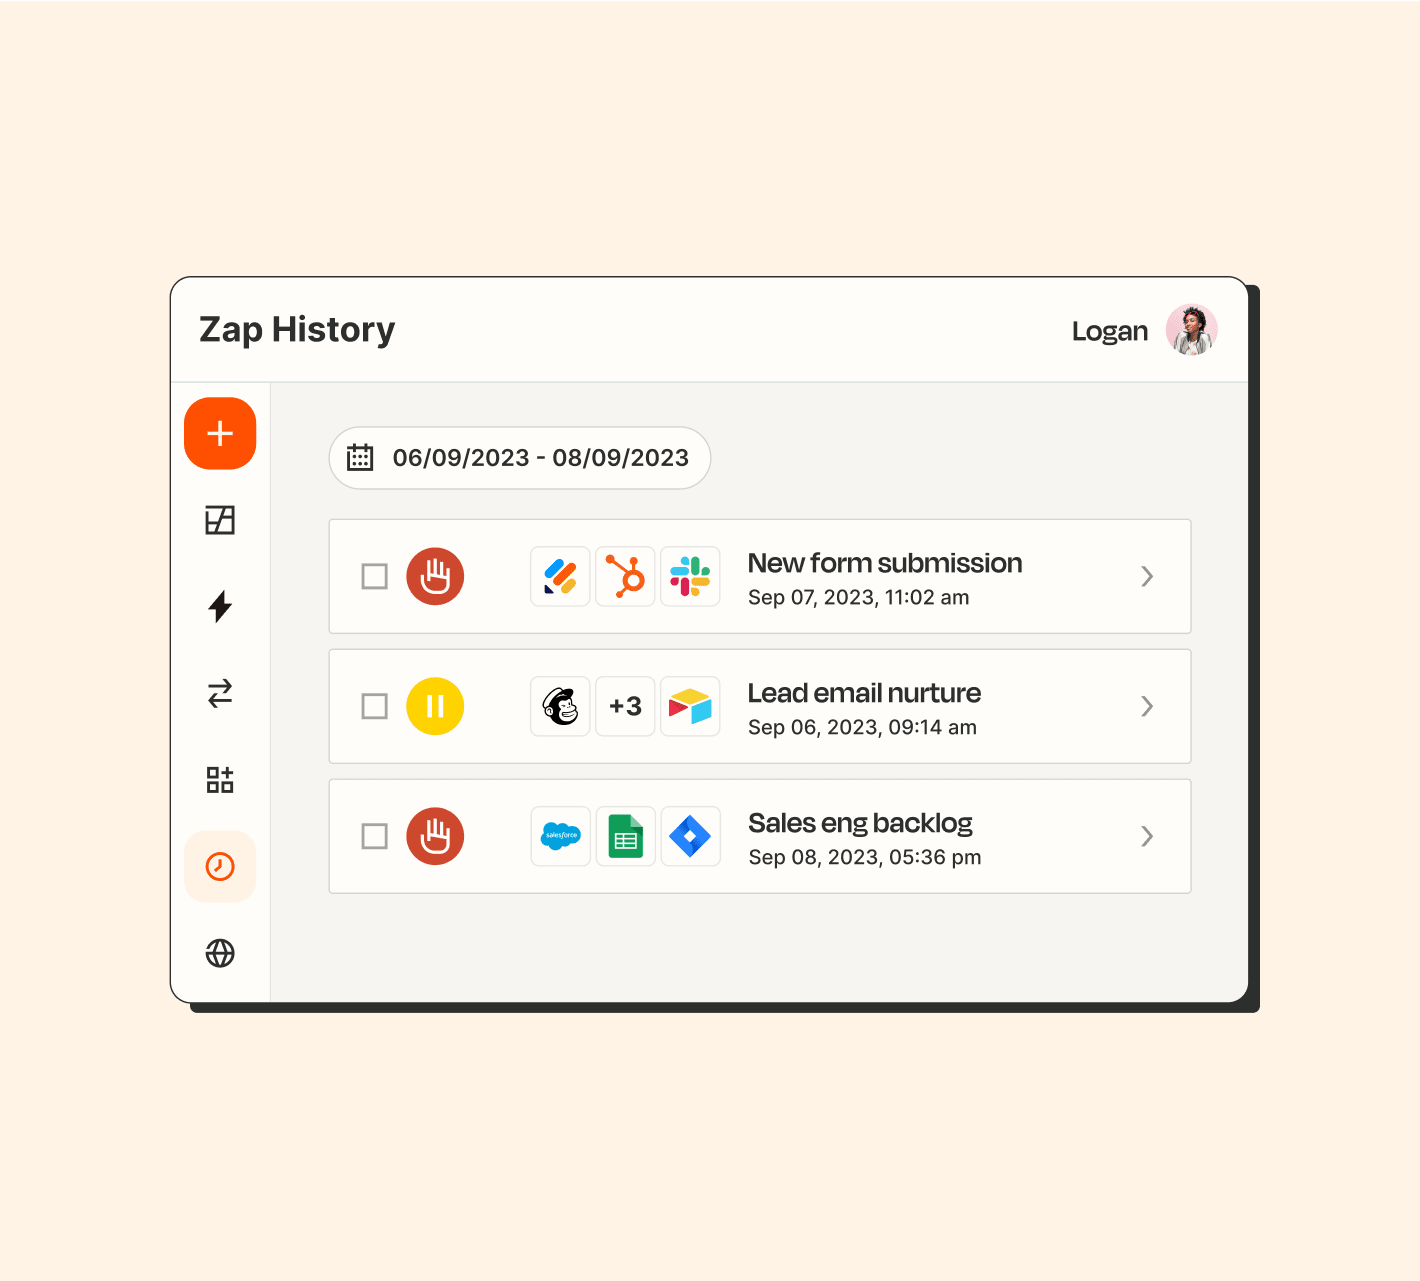 Zap history dashboard